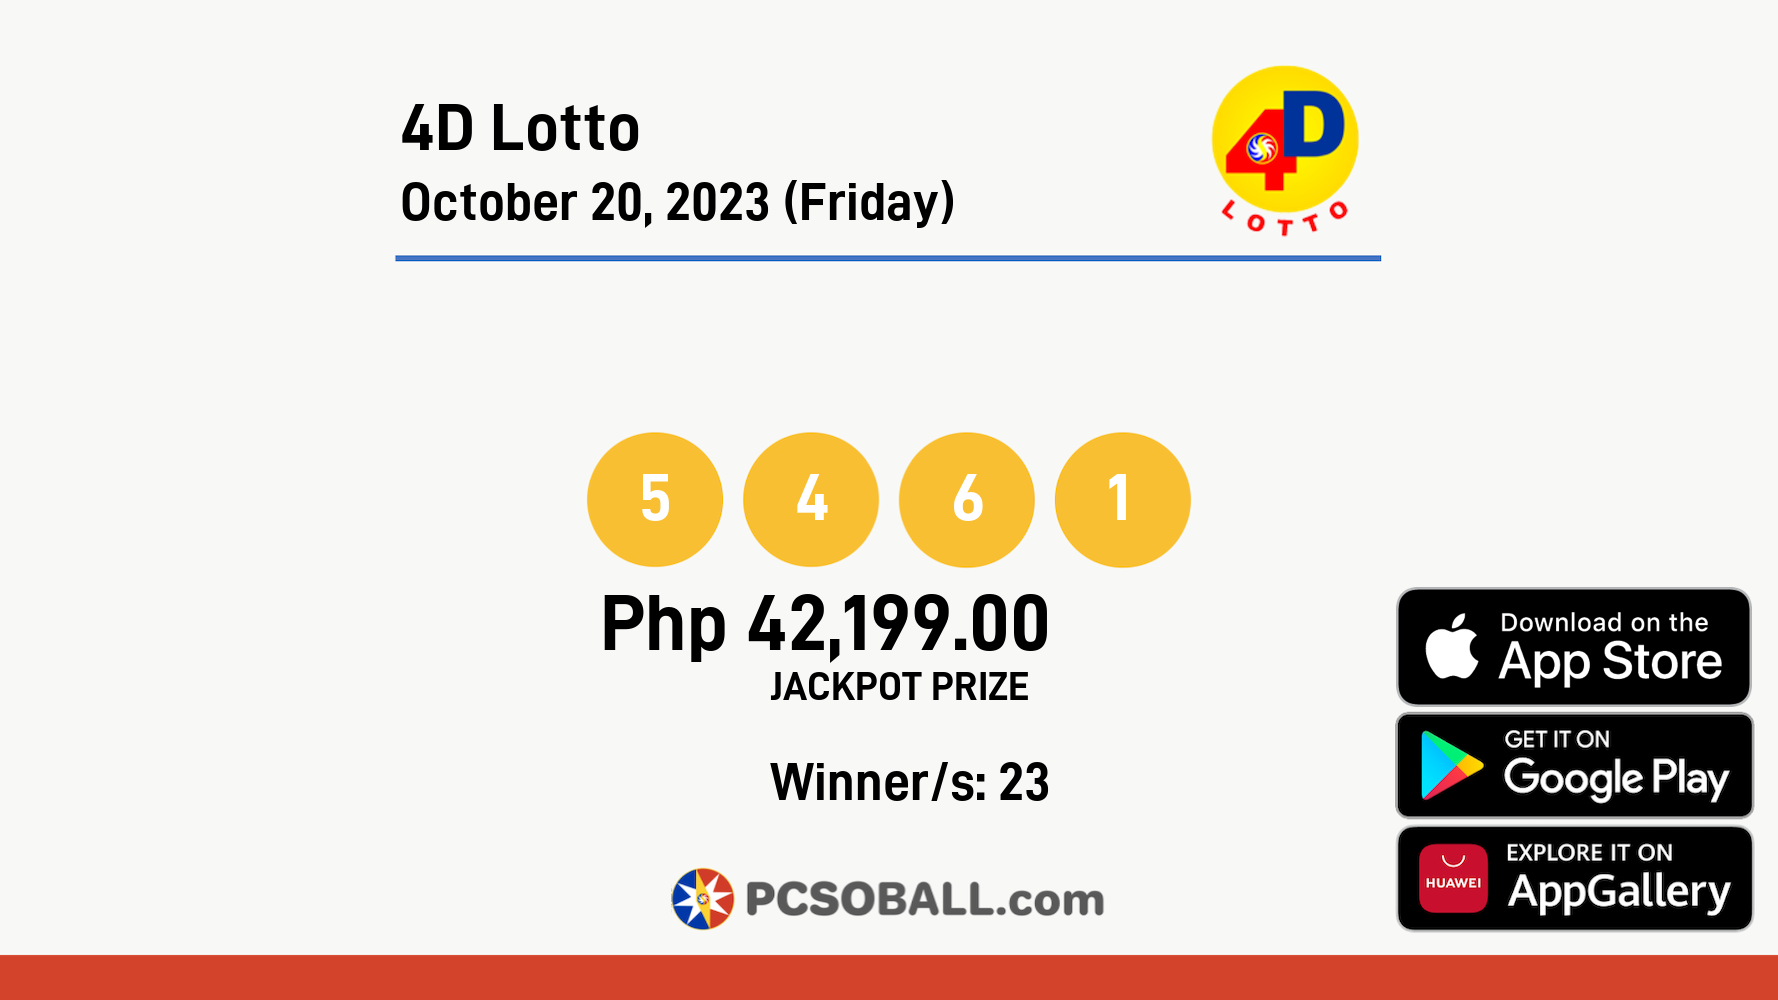 4D Lotto October 20, 2023 (Friday) Result